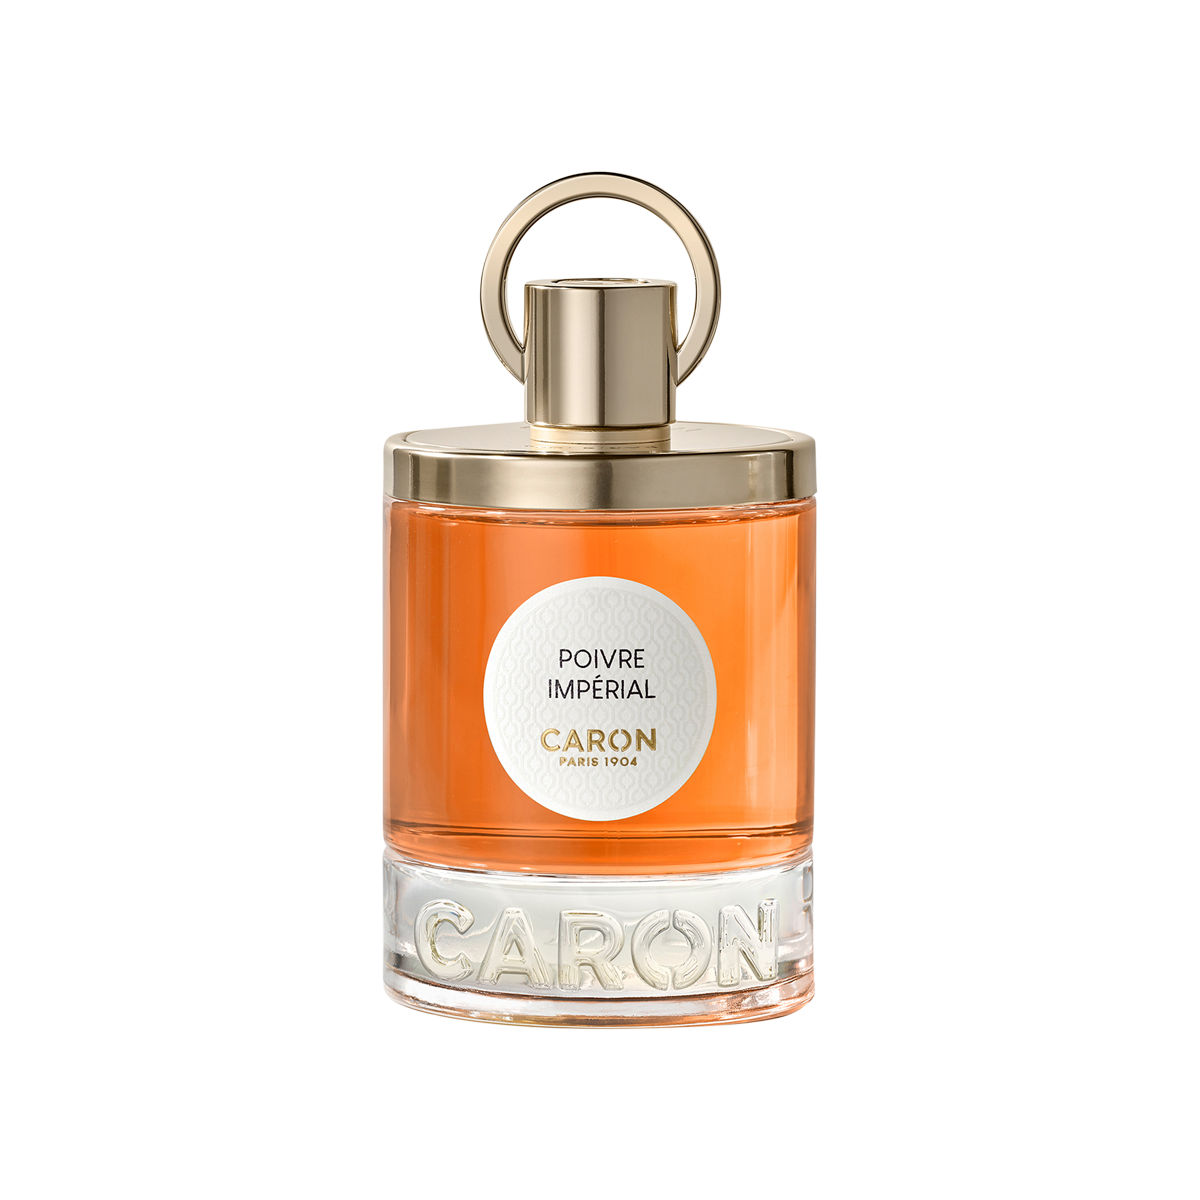 Caron - Poivre Imperial Eau De Parfum